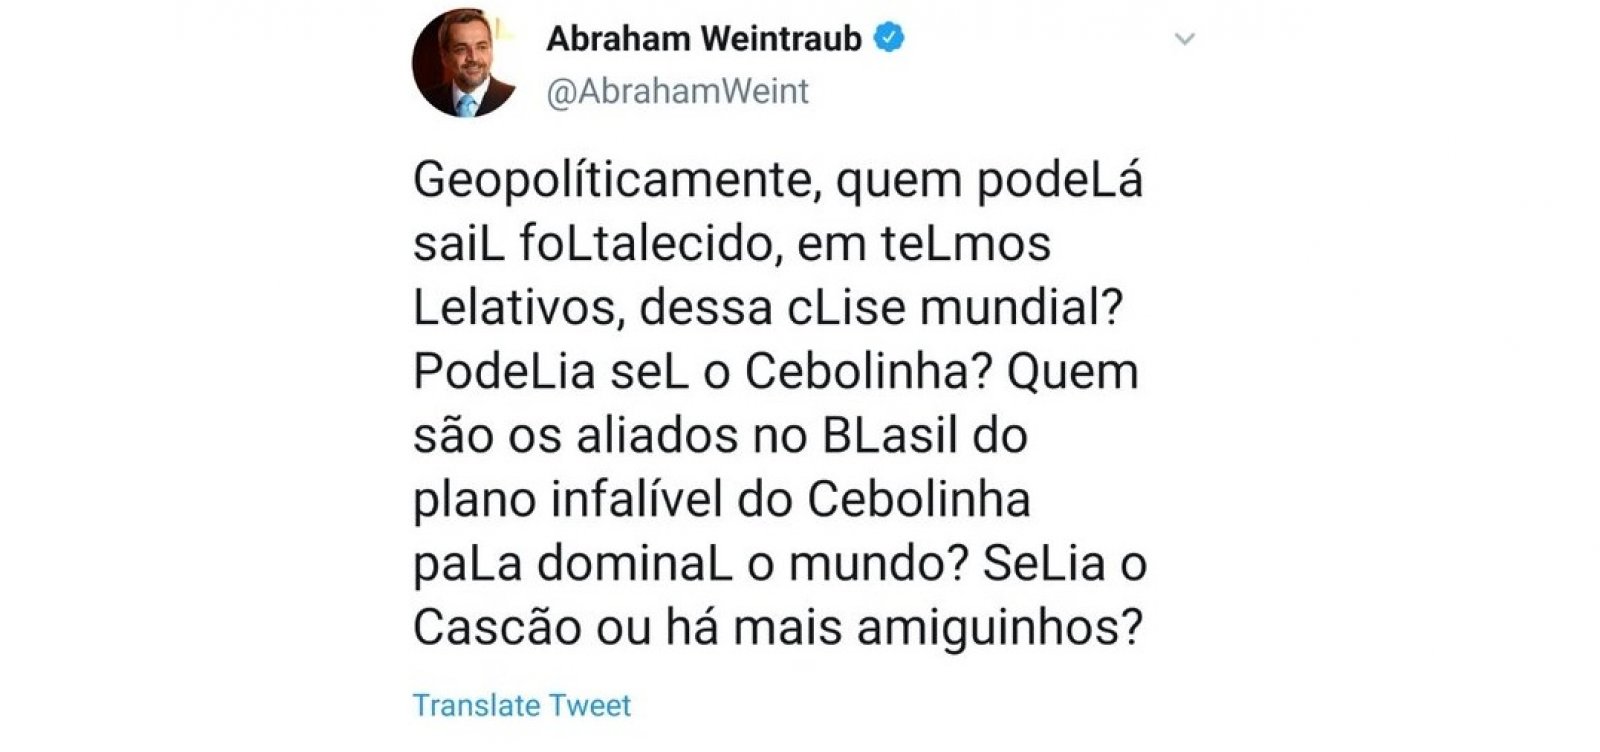 Embaixada da China diz que post de Weintraub é 'racista' e traz influências negativas na relação com o Brasil